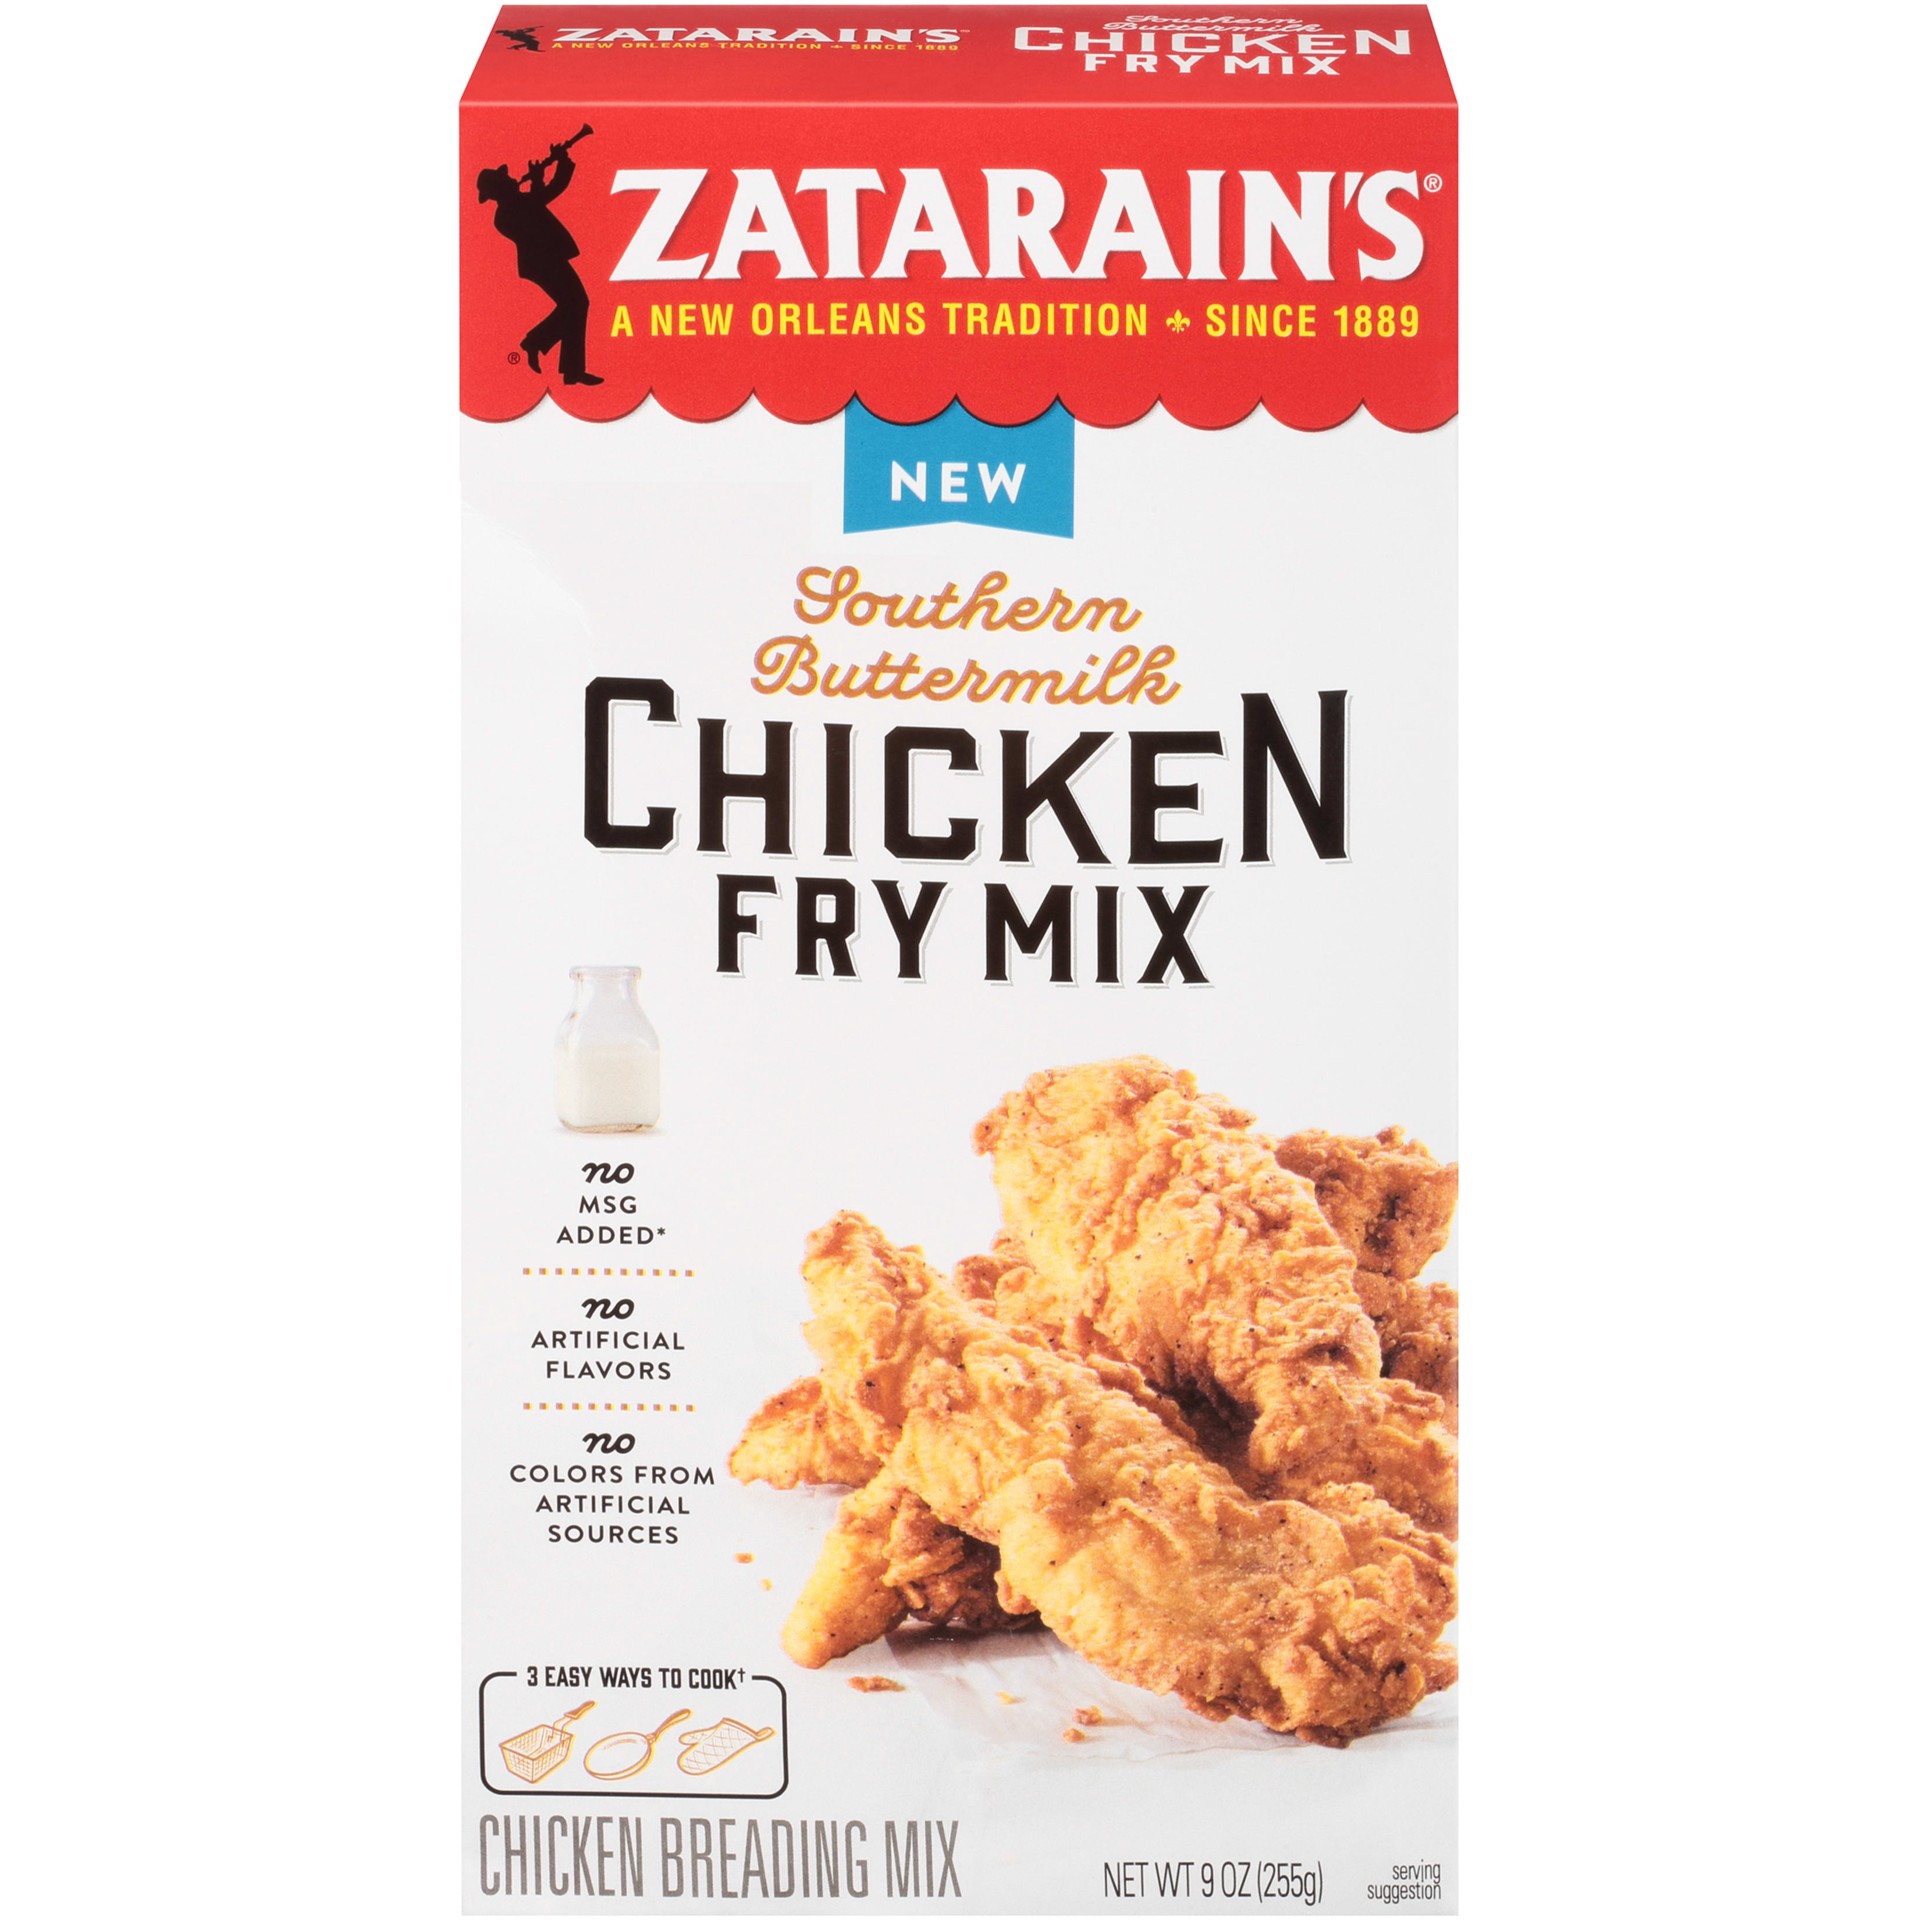 slide 1 of 9, Zatarain's Chicken Fry - Southern Buttermilk, 9 oz